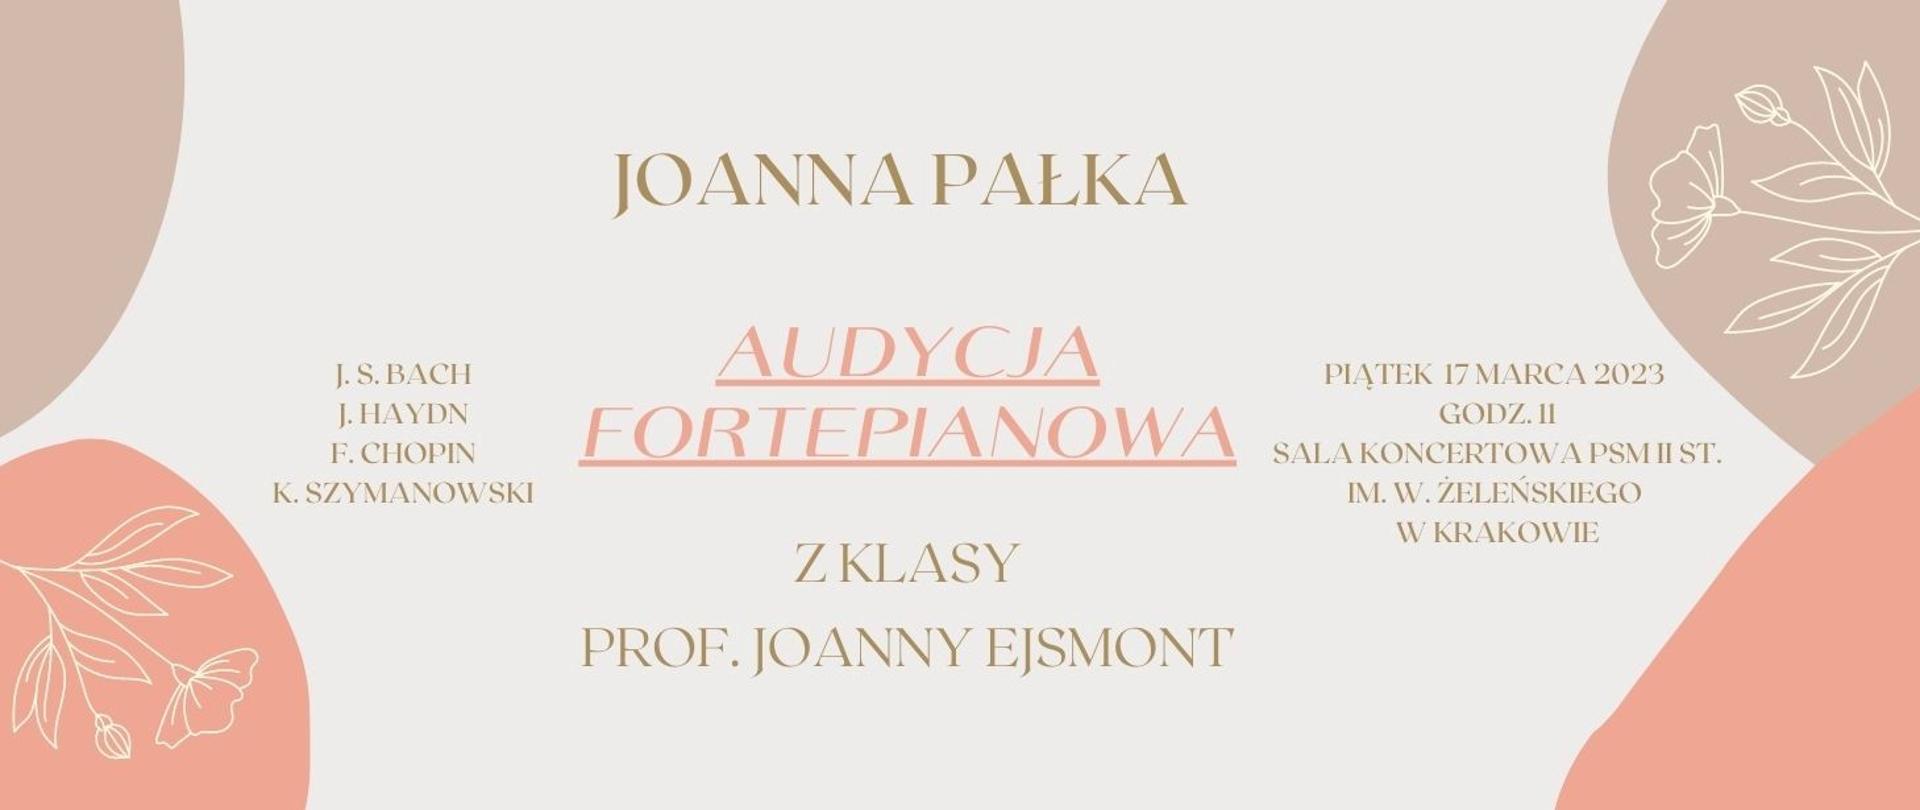 na beżowym tle napis Joanna Pałka audycja fortepianowa 17.03.2023